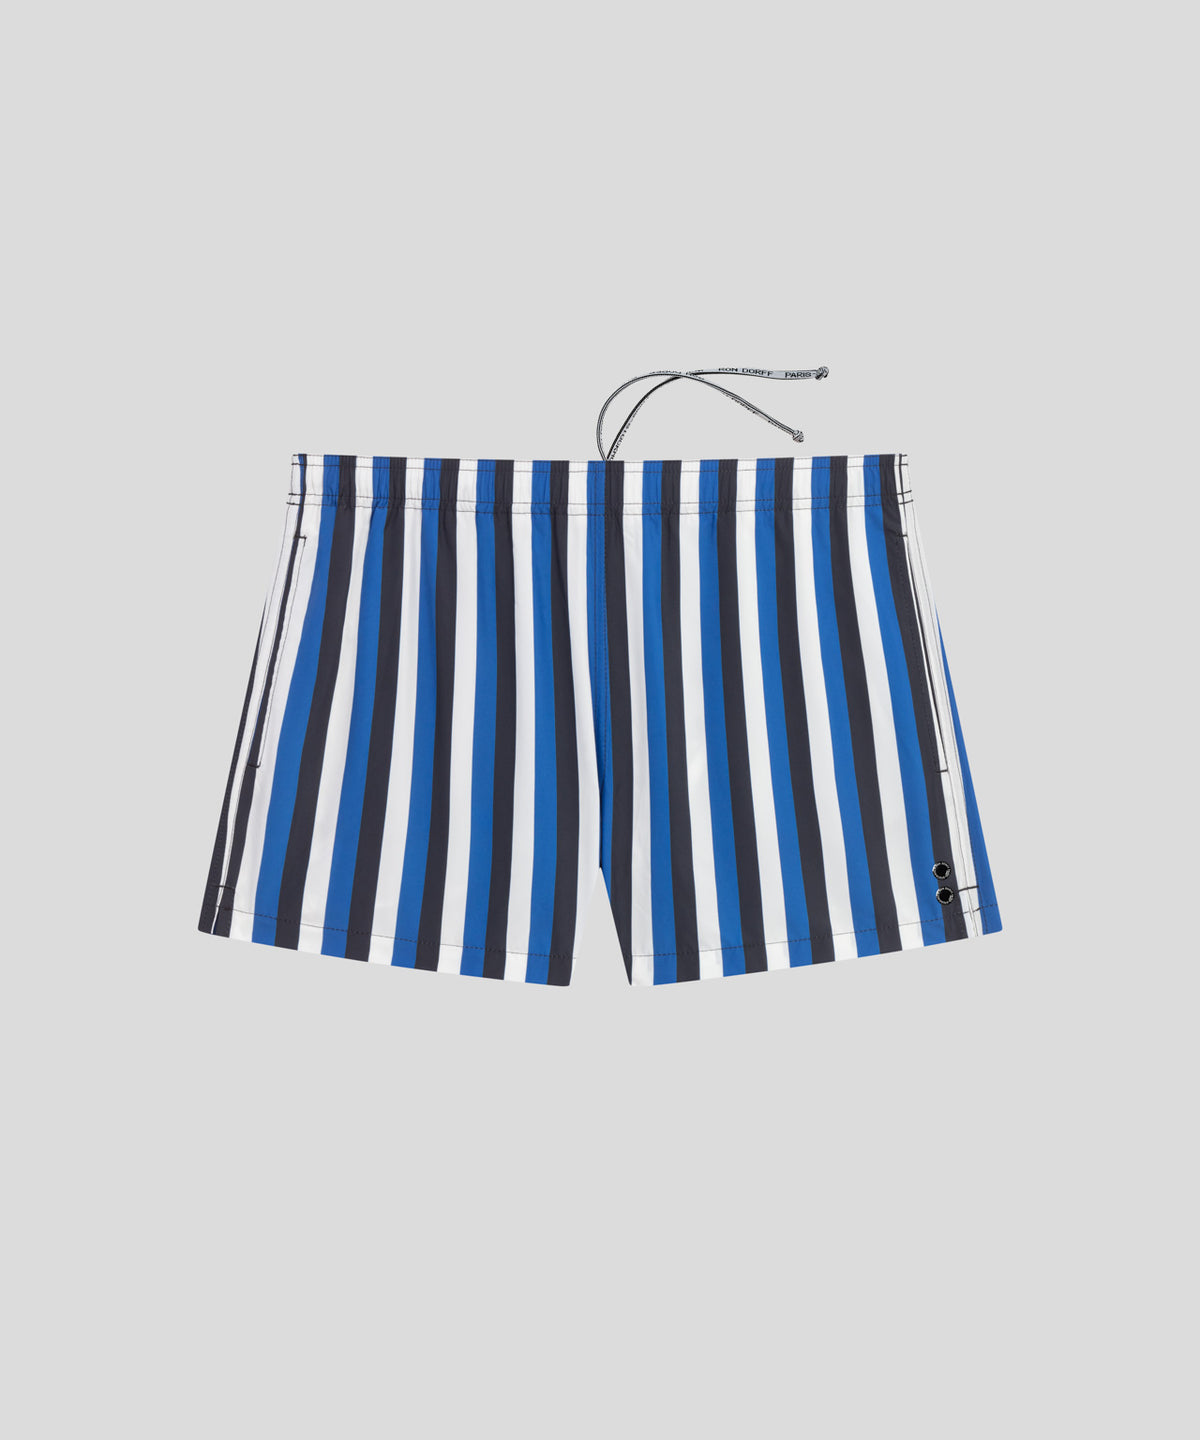 Short de bain court avec bandes tricolores verticales: Bleu grec/Bleu marine/Blanc